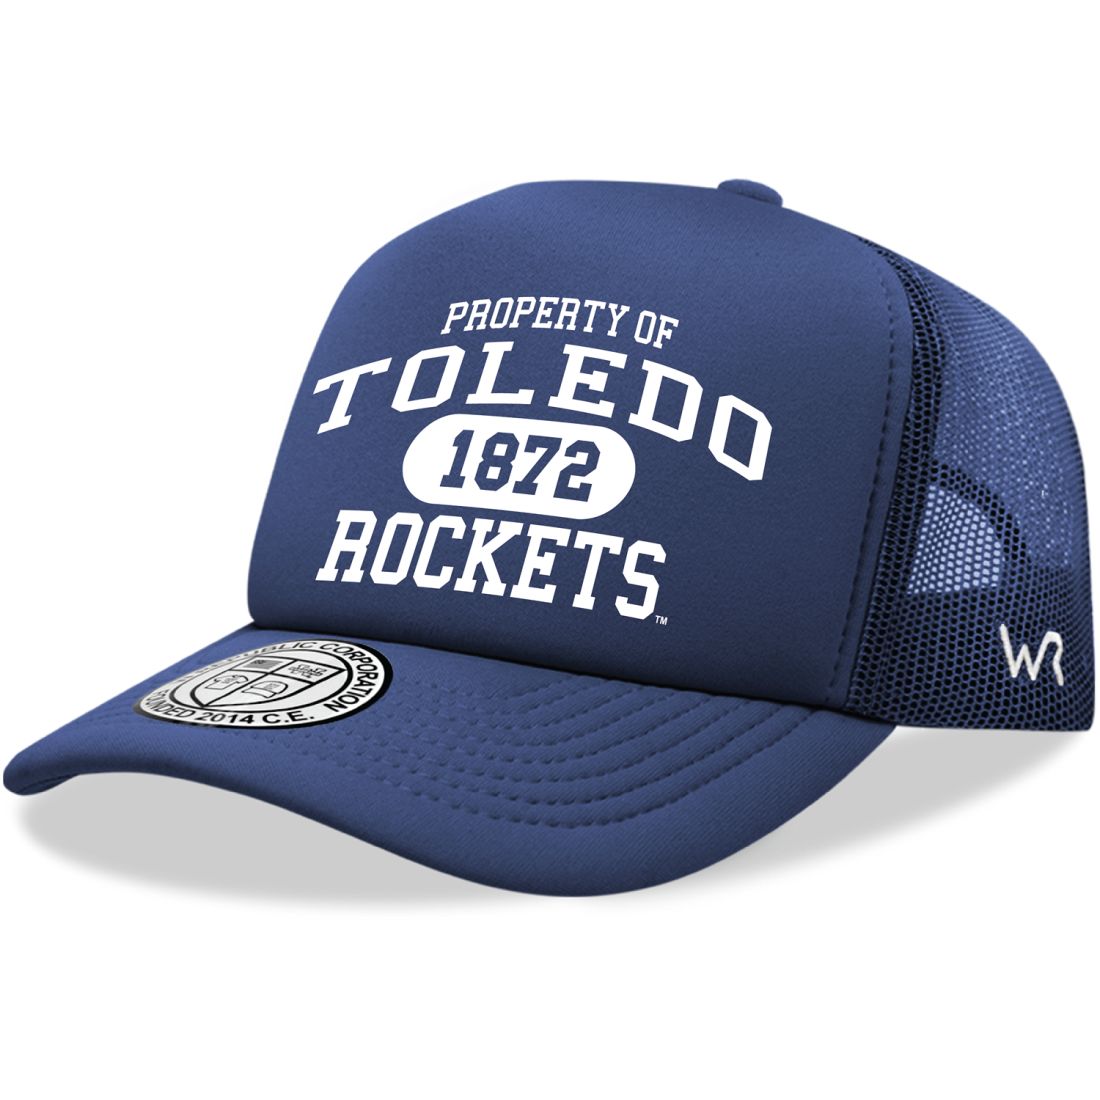 University of Toledo Rockets Property Foam Trucker Hats